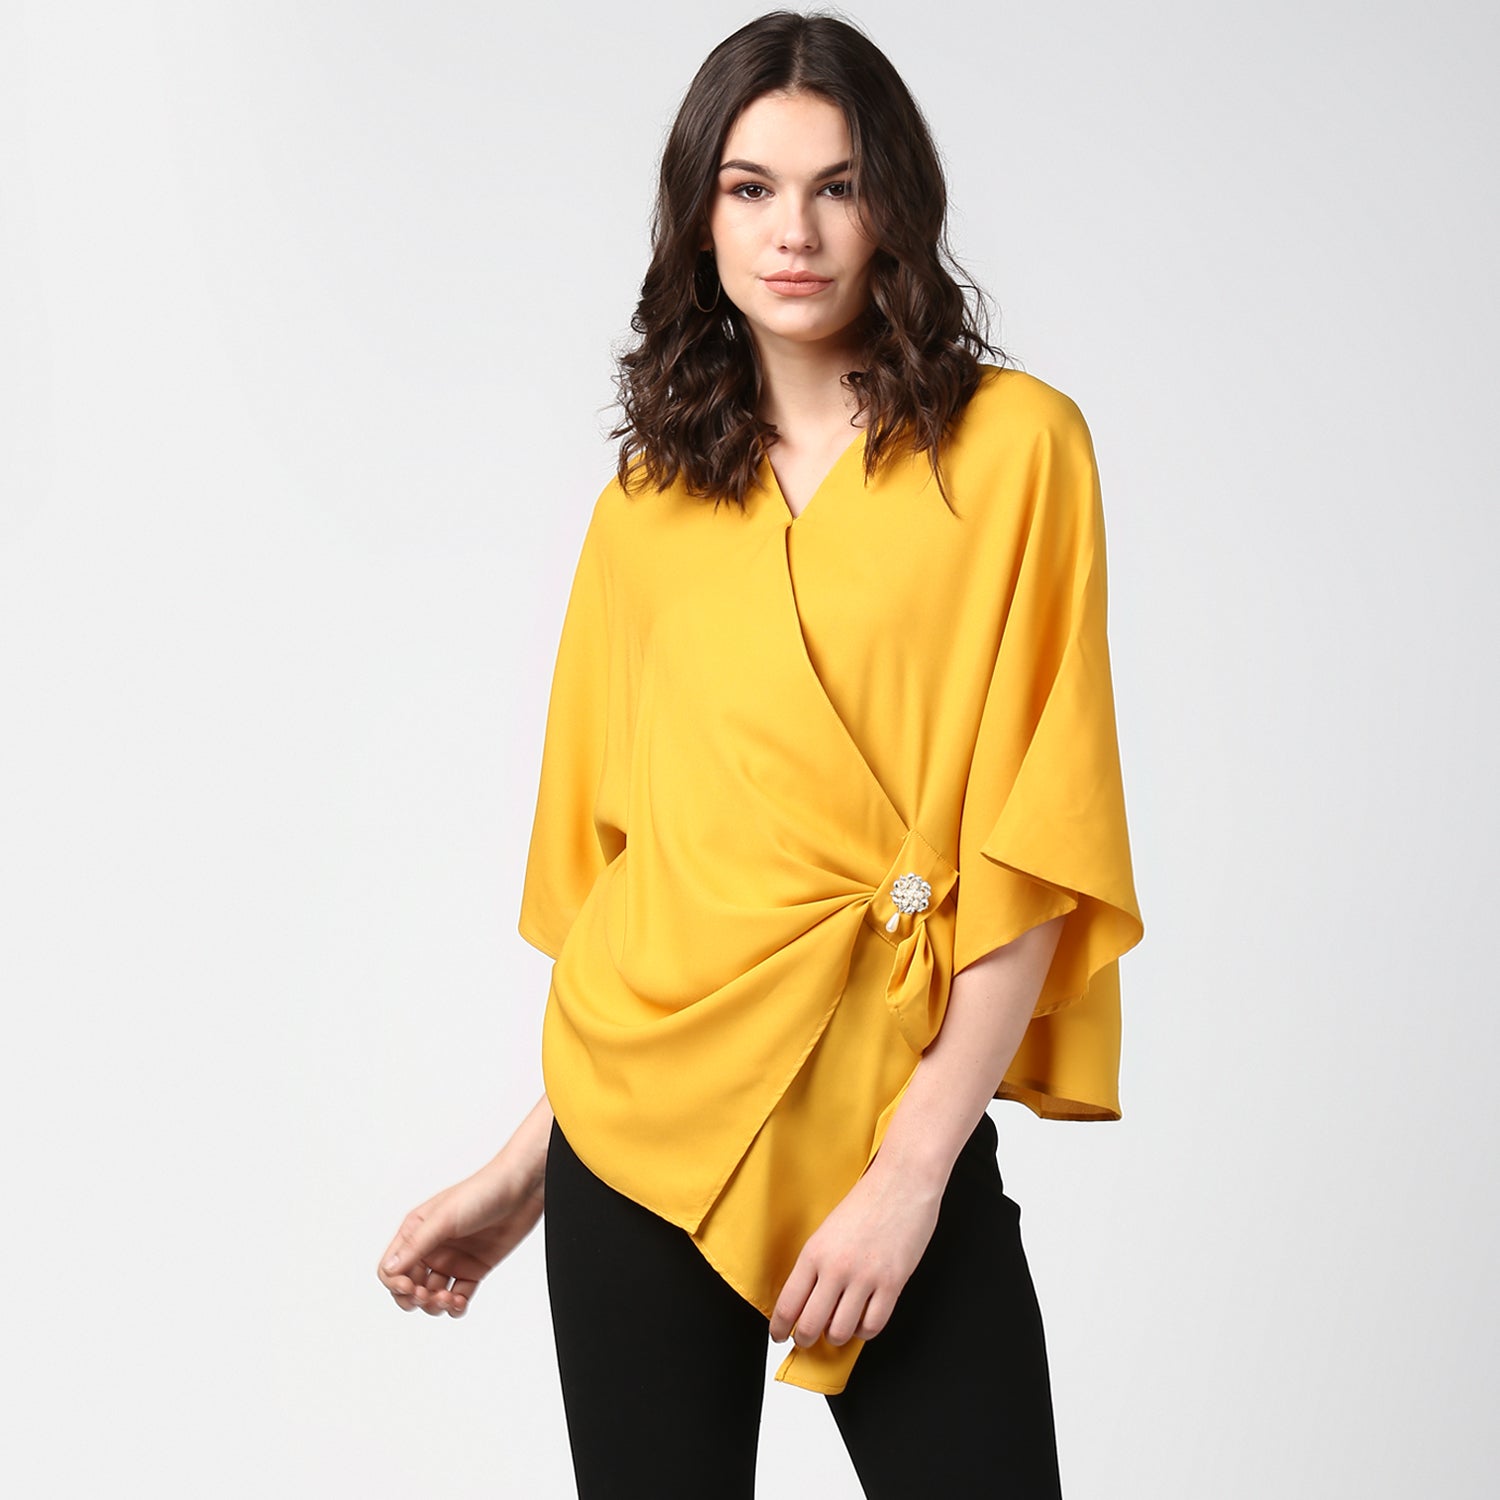 Women's Yellow Side Drape Top with Brooch - StyleStone